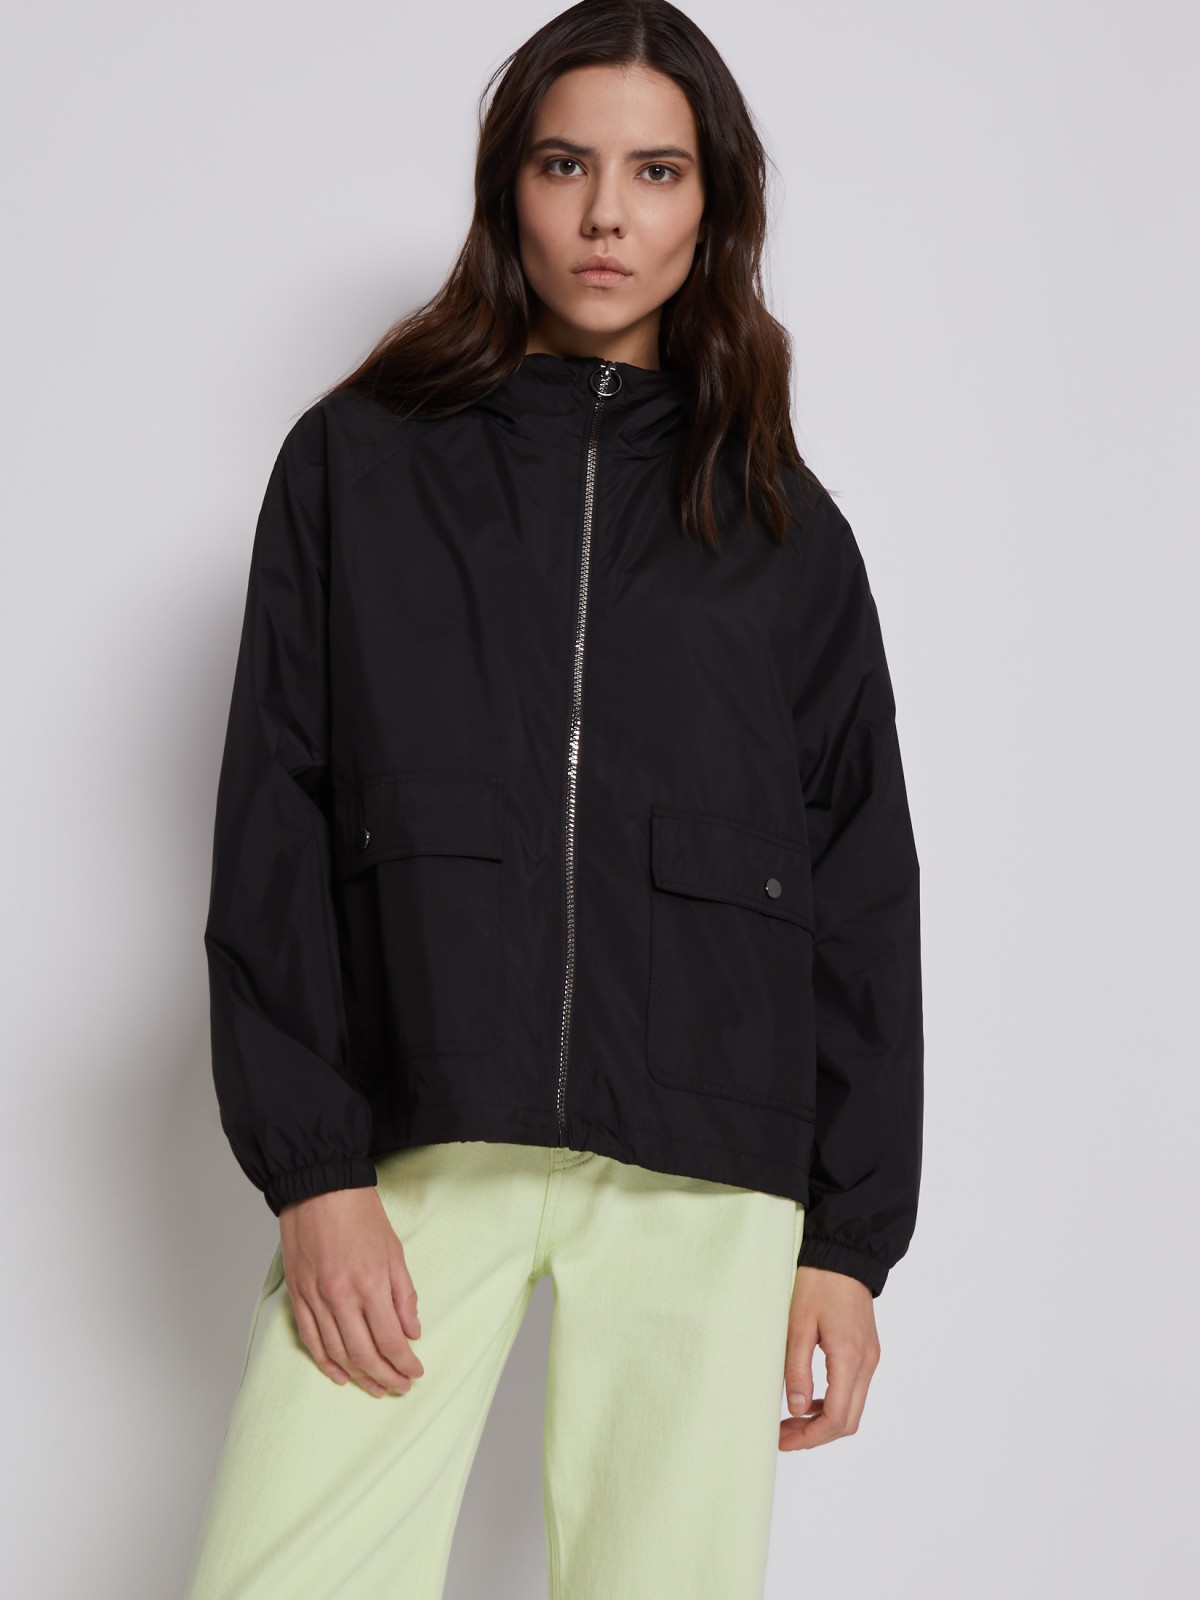 Куртка-ветровка с капюшоном zolla 023215612084, цвет черный, размер XS - фото 3